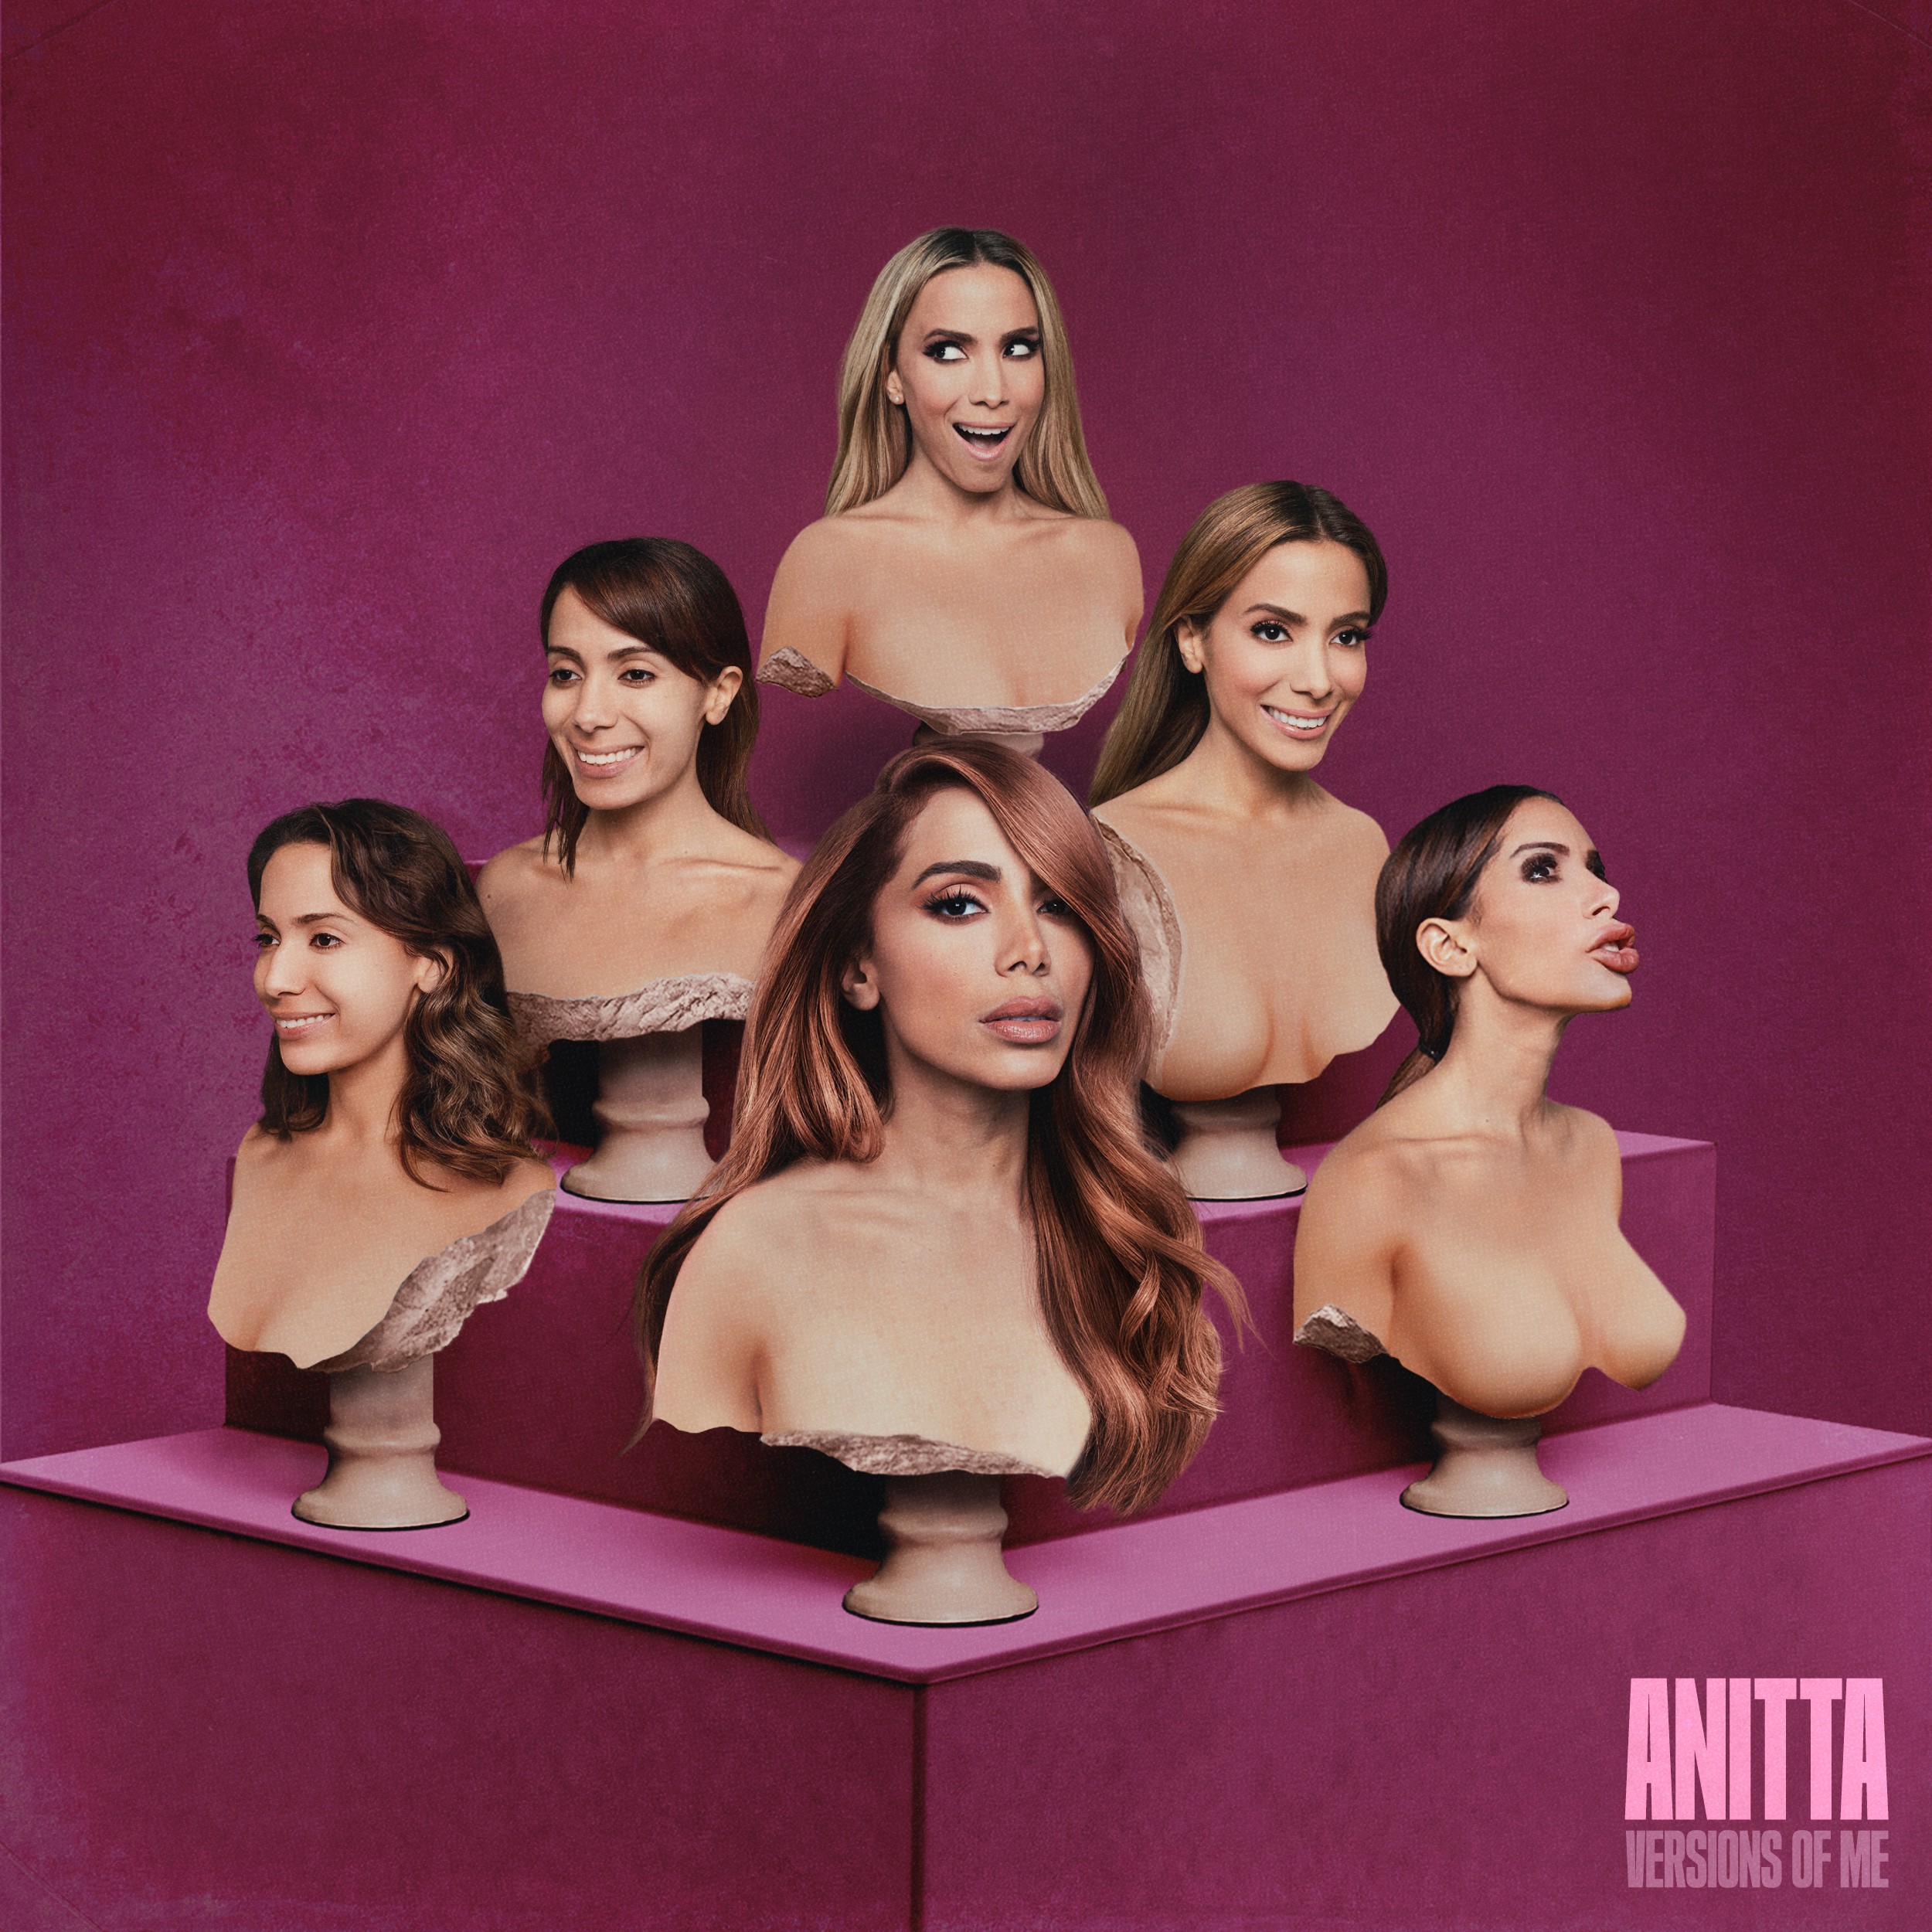 Capa de 'Versions Of Me' traz seis diferentes versões de Anitta (Foto: Divulgação)